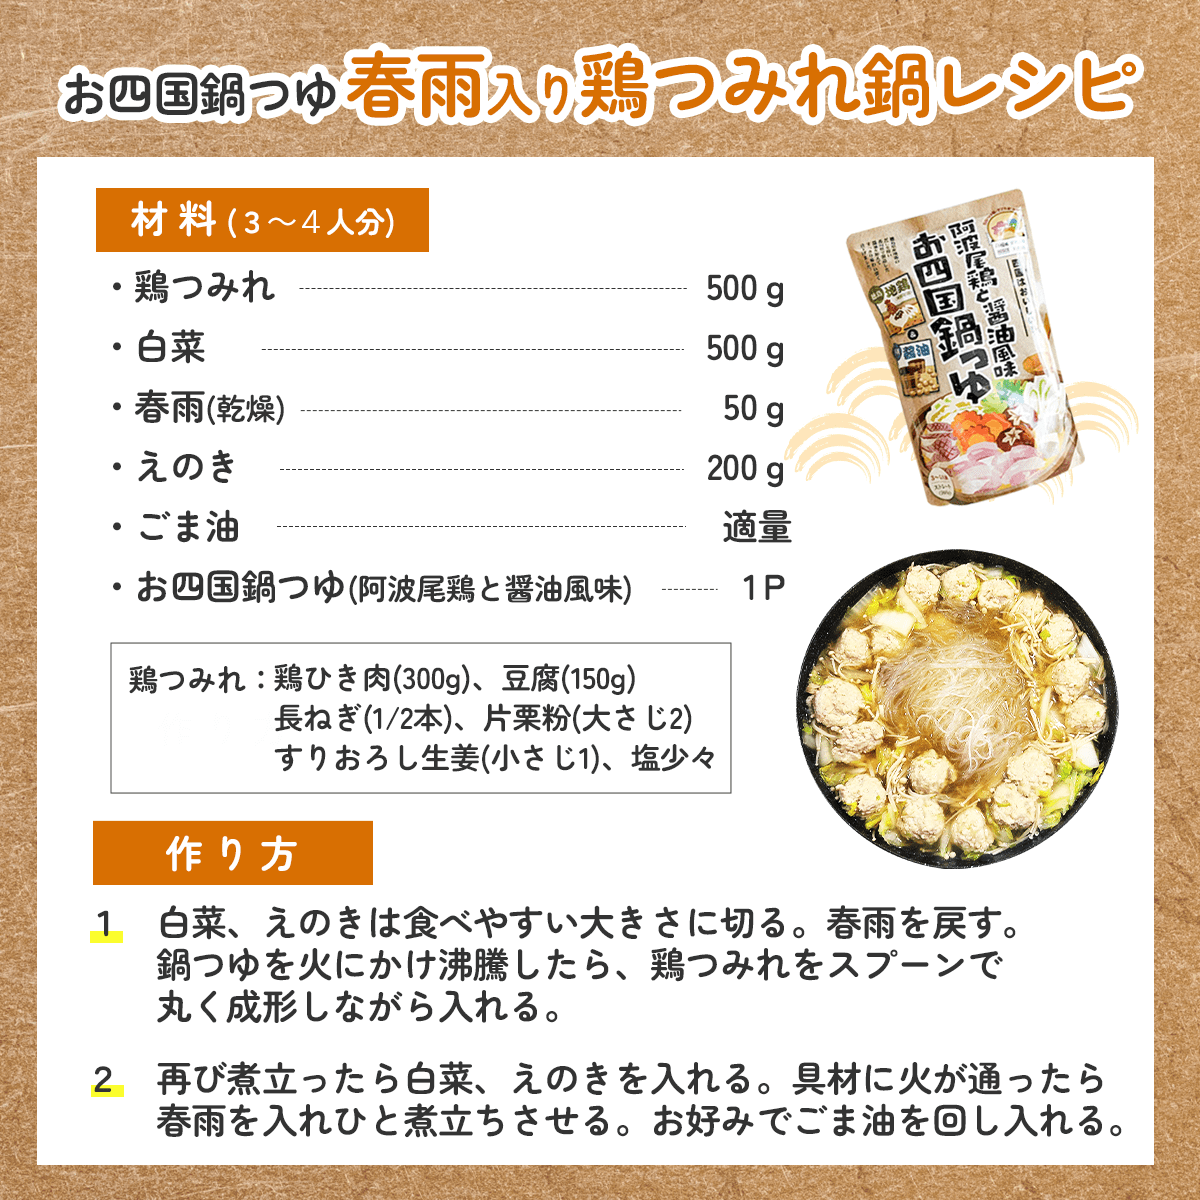 お四国鍋つゆ「春雨入り鶏つみれ鍋」レシピ